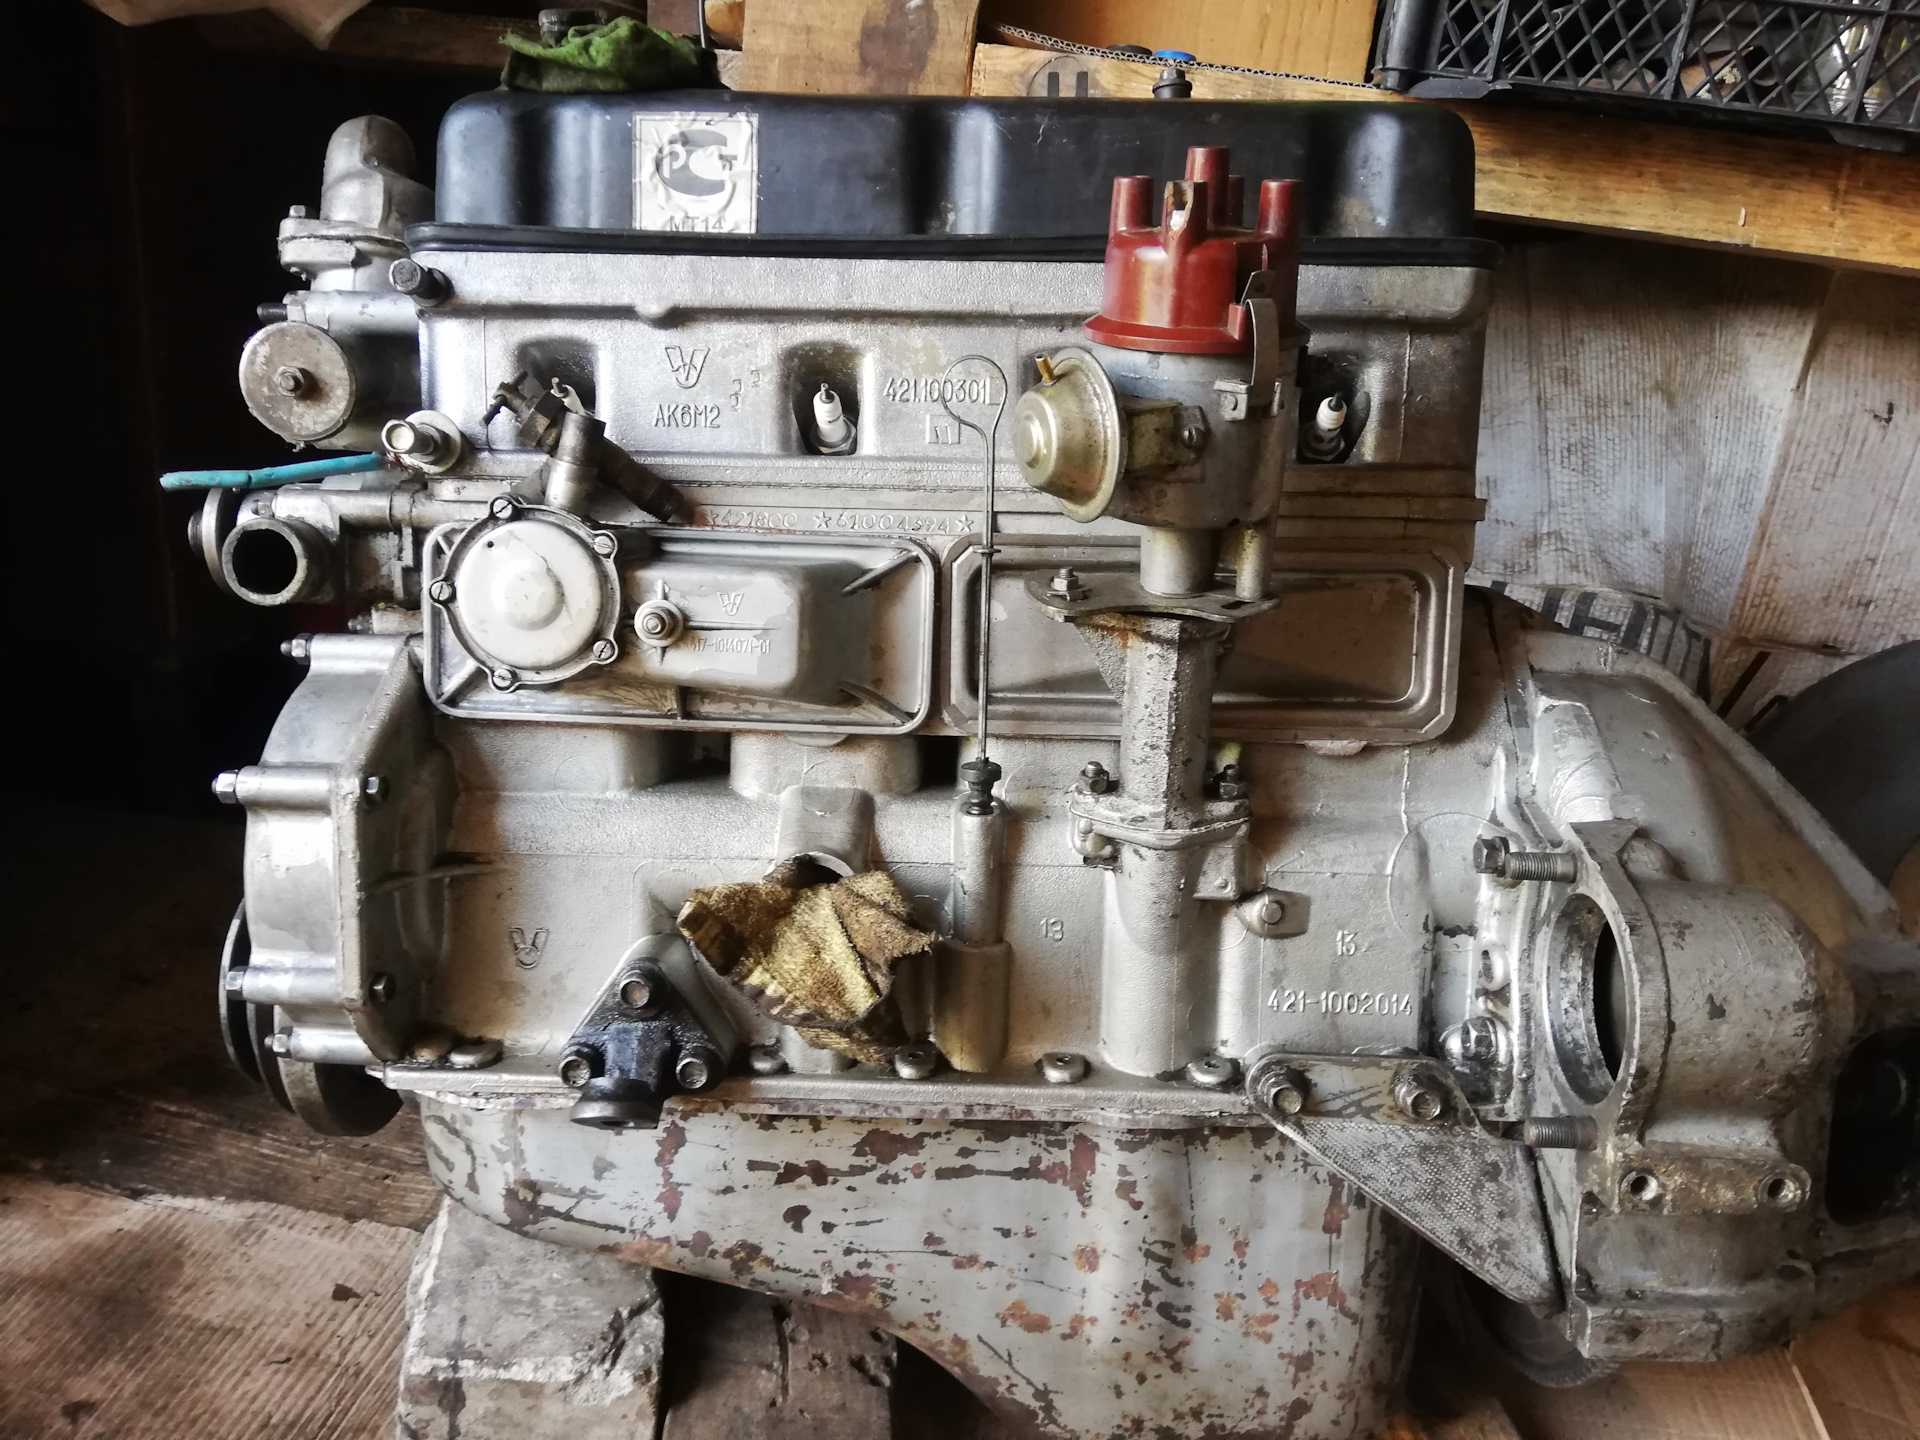 Умз 421 двигатель: технические характеристики, отзывы, двс уаз